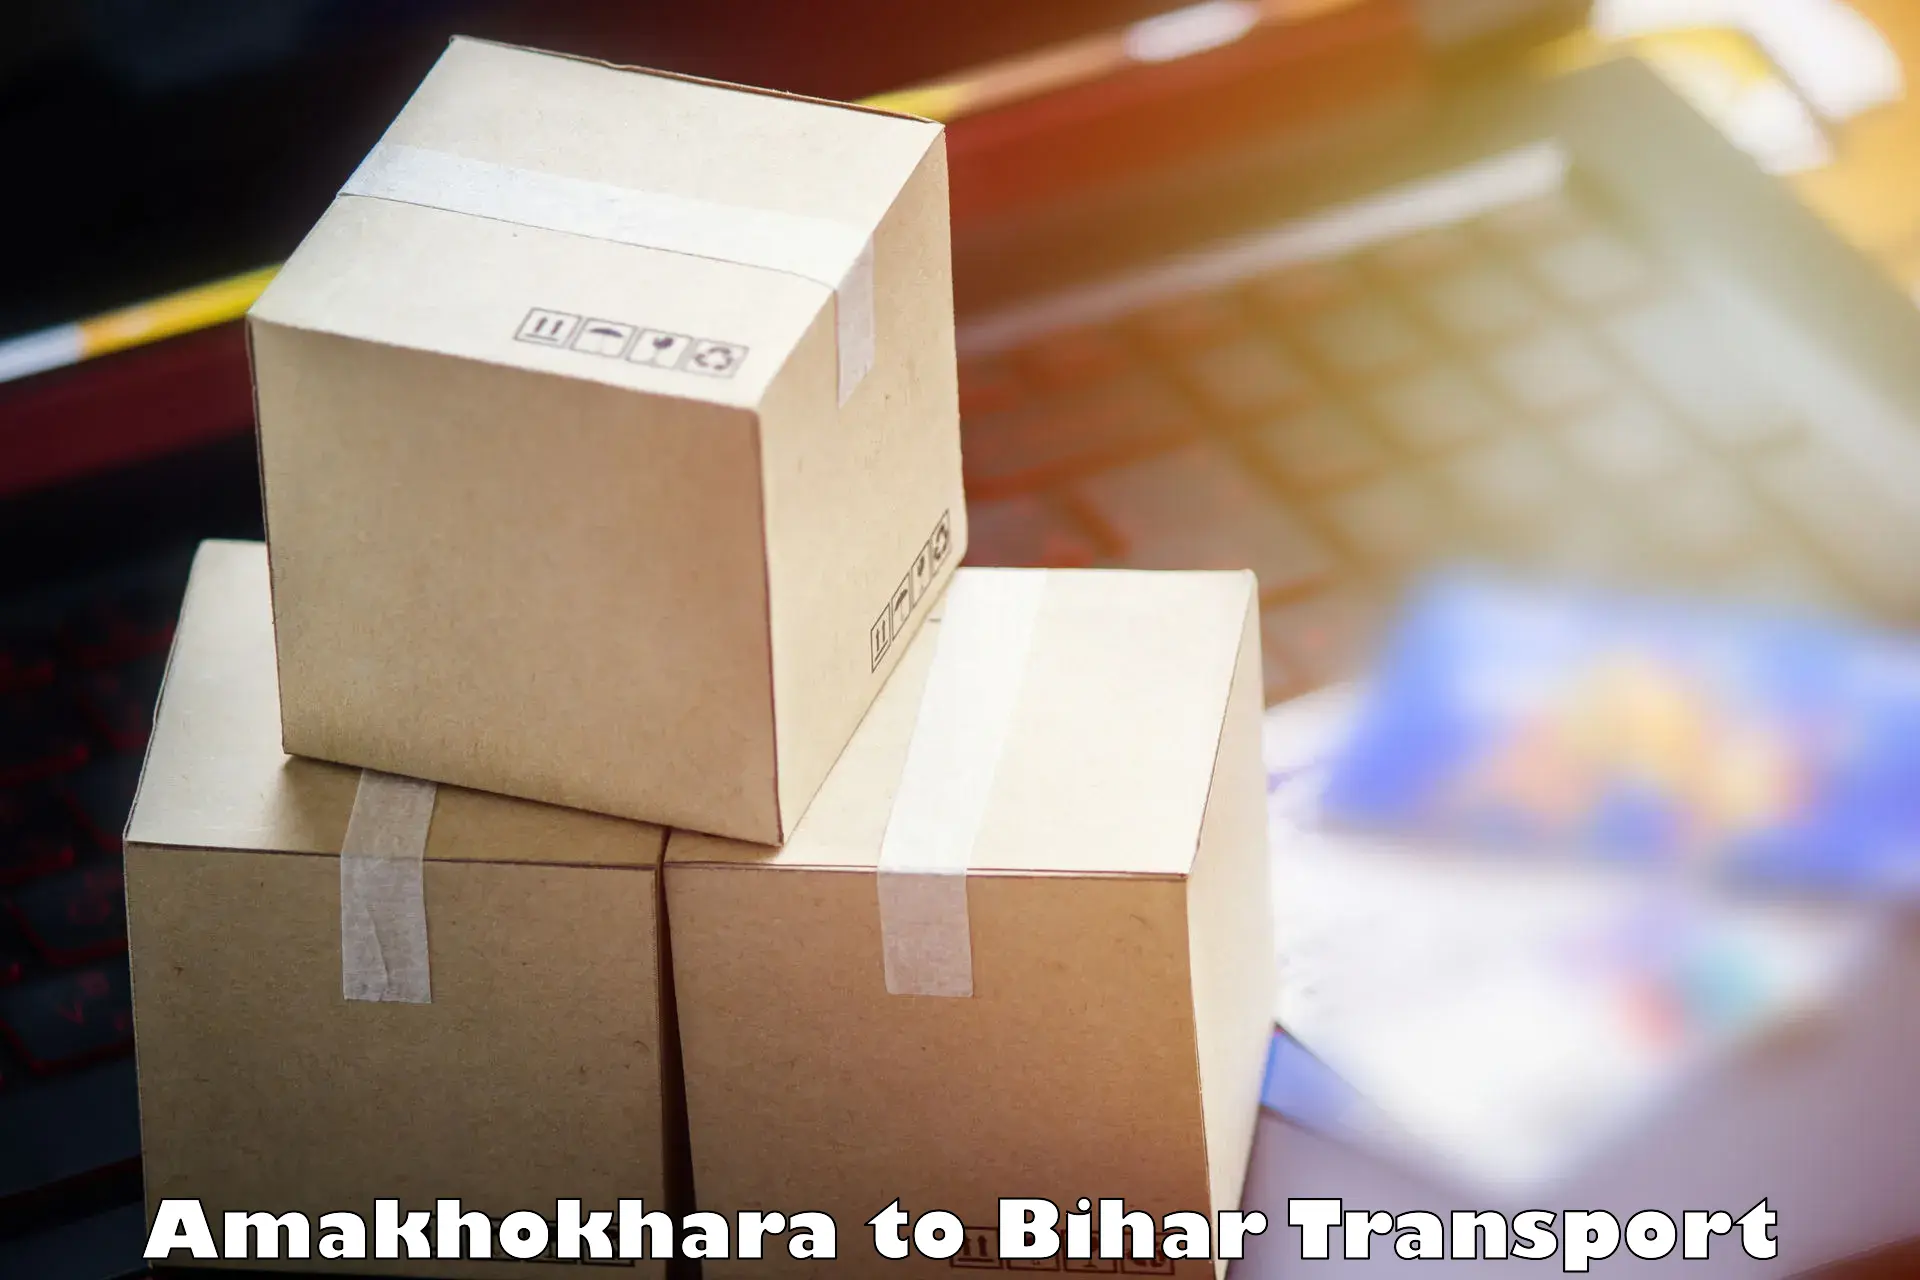 Pick up transport service Amakhokhara to Darbhanga